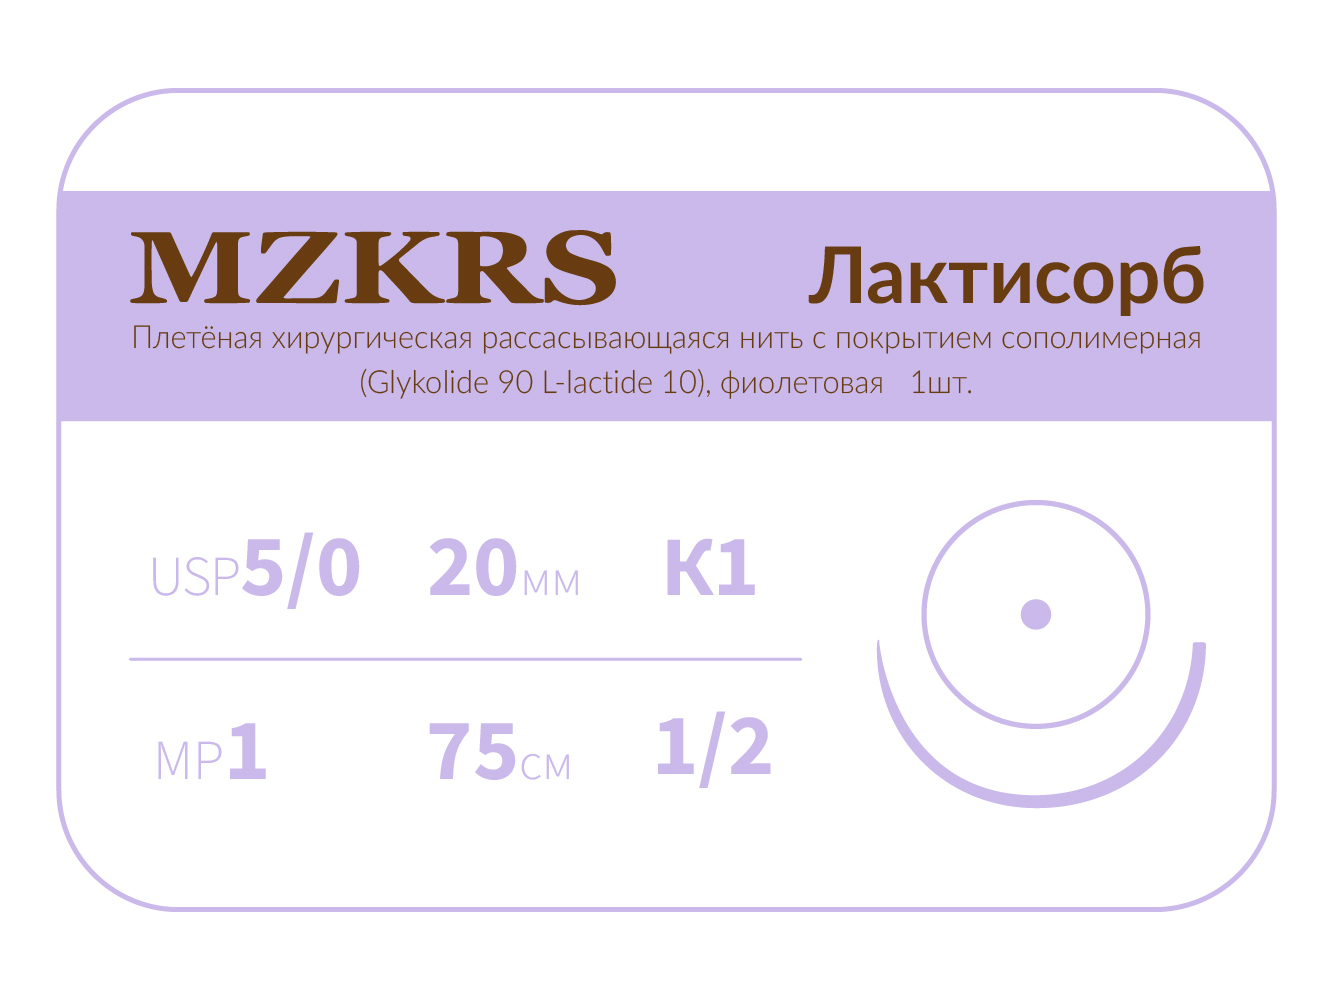 2012К1-Premium-5/0 (1)75 ПГЛ ЛАКТИСОРБ хирургическая нить сополимерная, MZKRS (Россия)